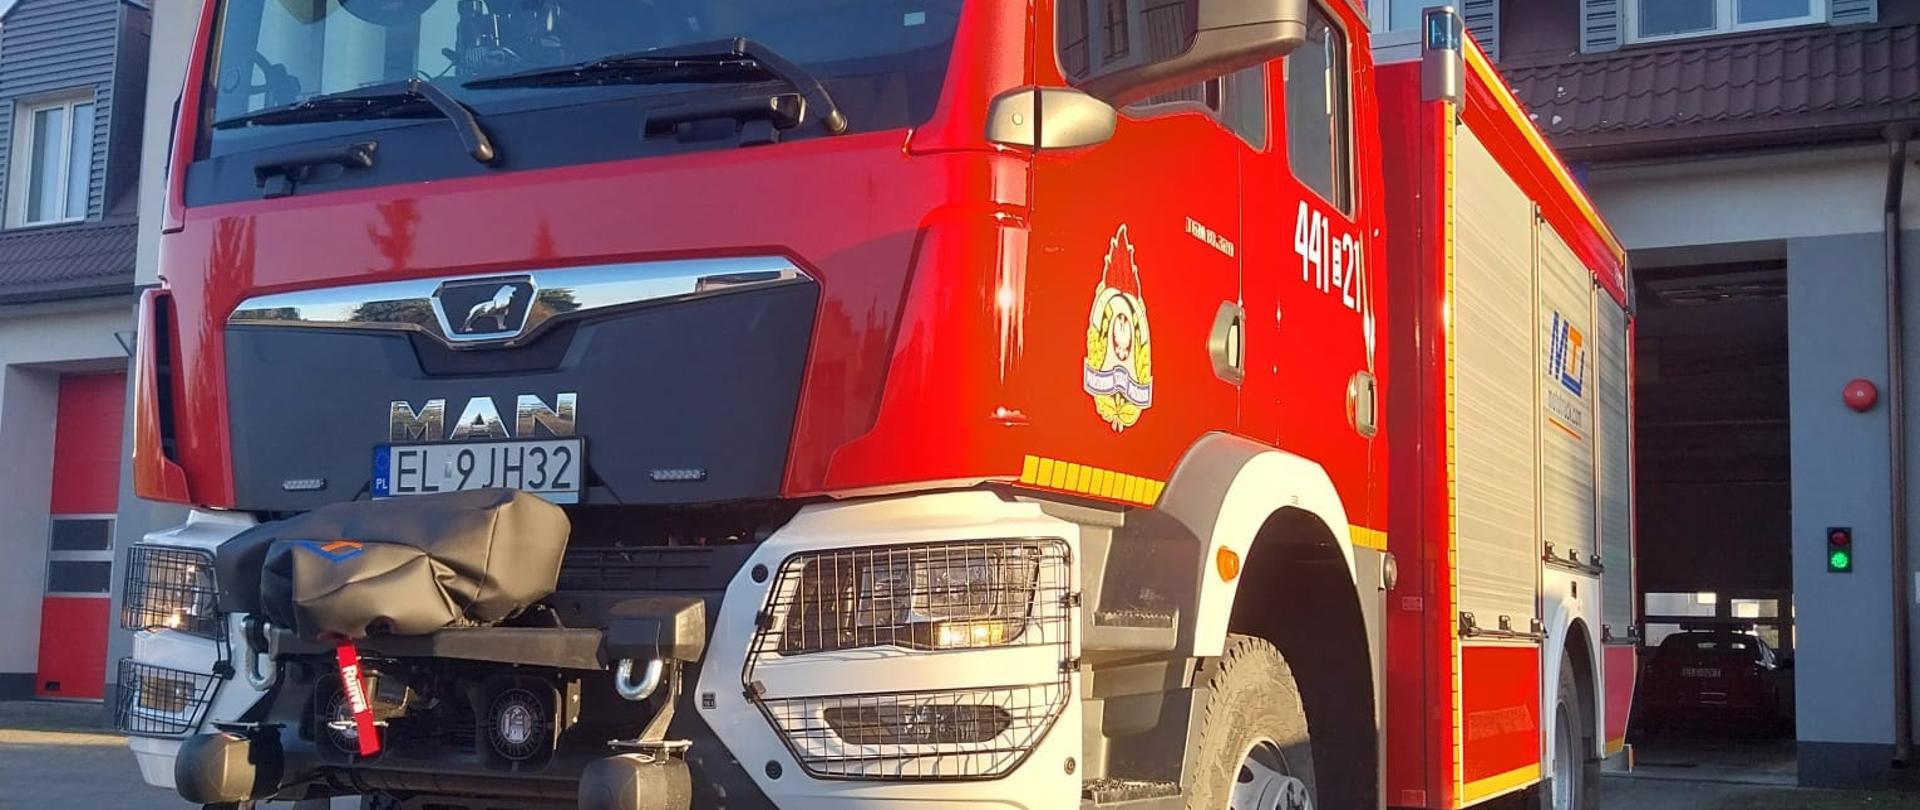 Na zdjęciu widać duży czerwony samochód strażacki, który stoi przed budynkiem straży pożarnej. Na drzwiach ma logo Państwowej Straży Pożarnej i biały napis 441E21. Z przodu ma napis MAN i numer rejestracyjny EL9JH32. Pojazd ma zapalone światła. Jest widno.